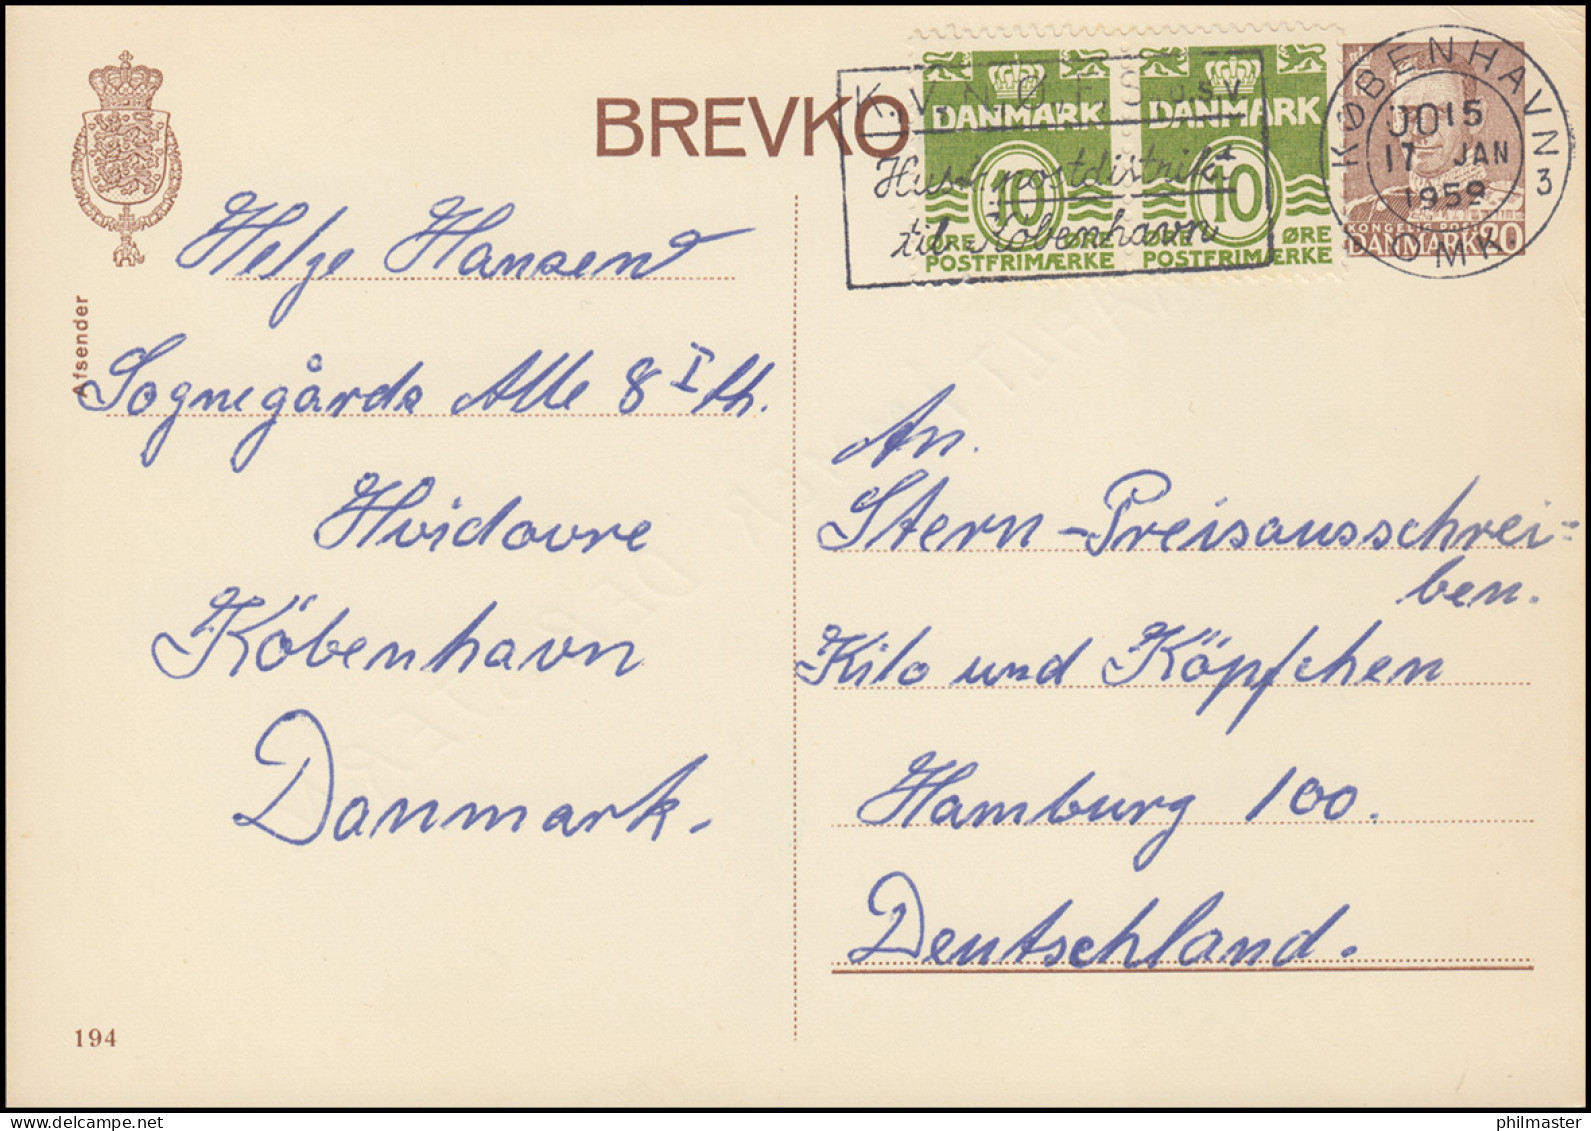 Dänemark Postkarte P 243II Frederik IX. 20 Öre, Kz. 194, KØBENHAVN 17.1.1959 - Enteros Postales